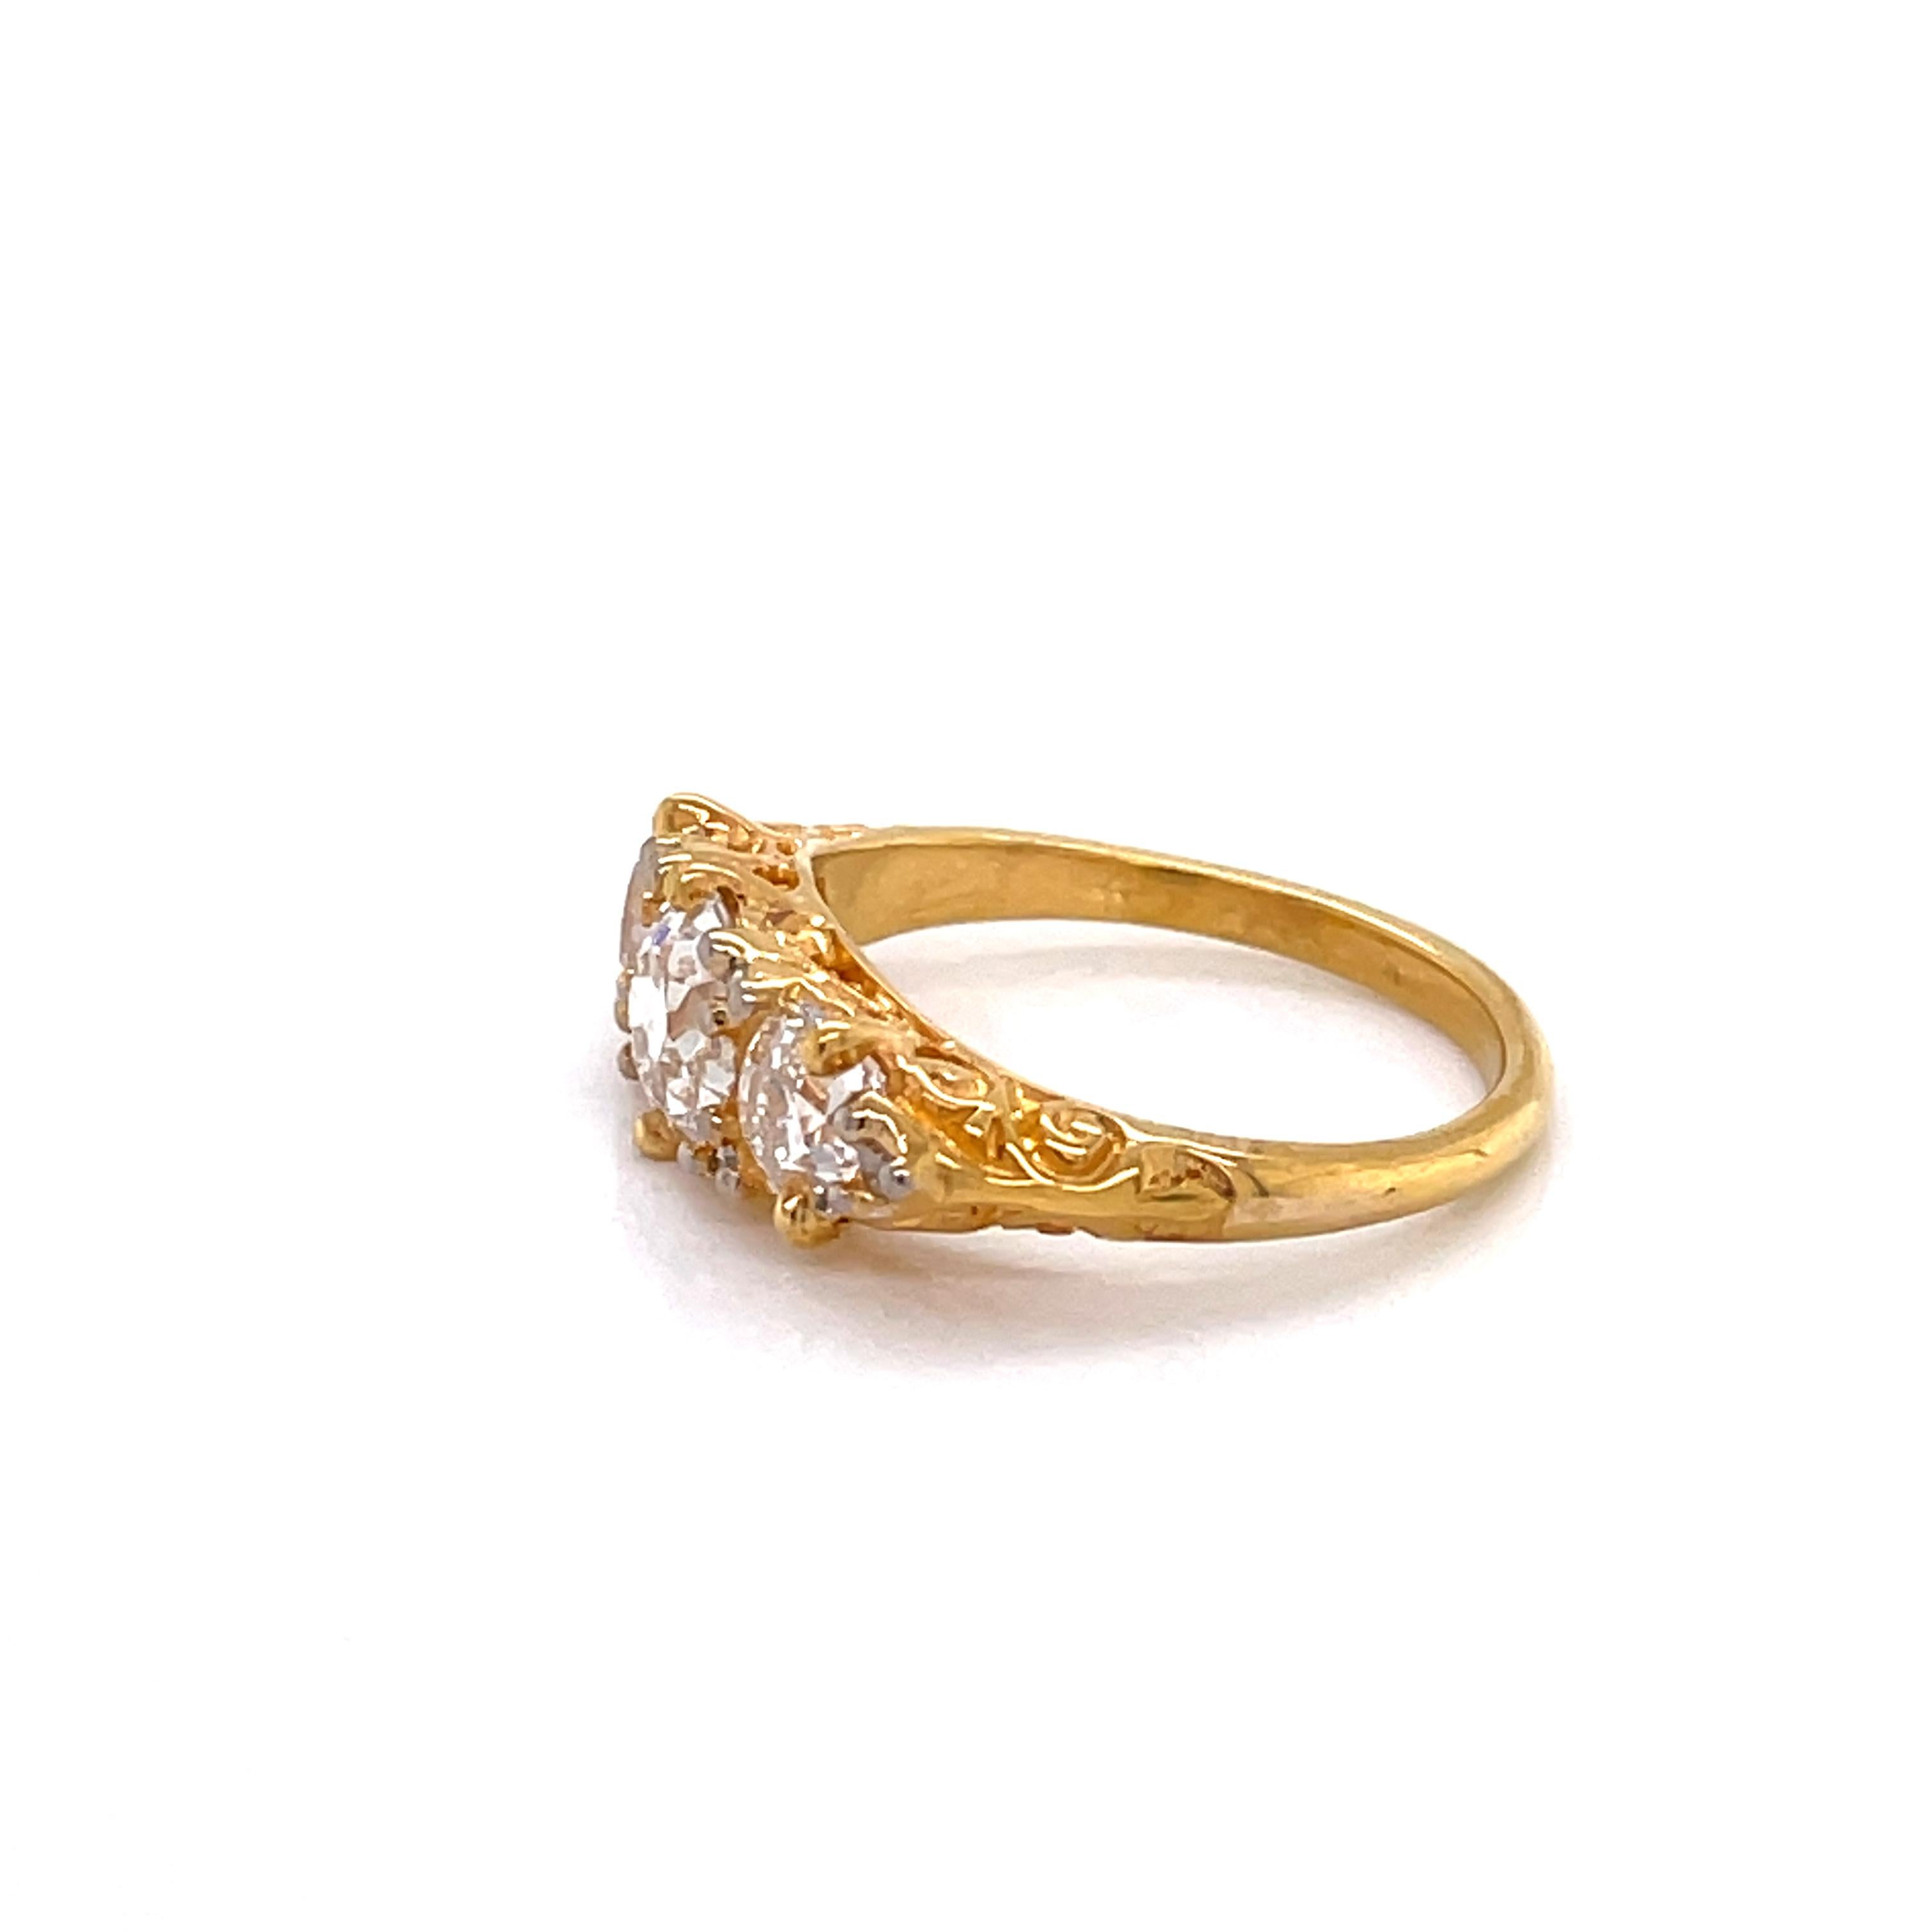 Antique English Diamond 18 Karat Yellow Gold Ring 2